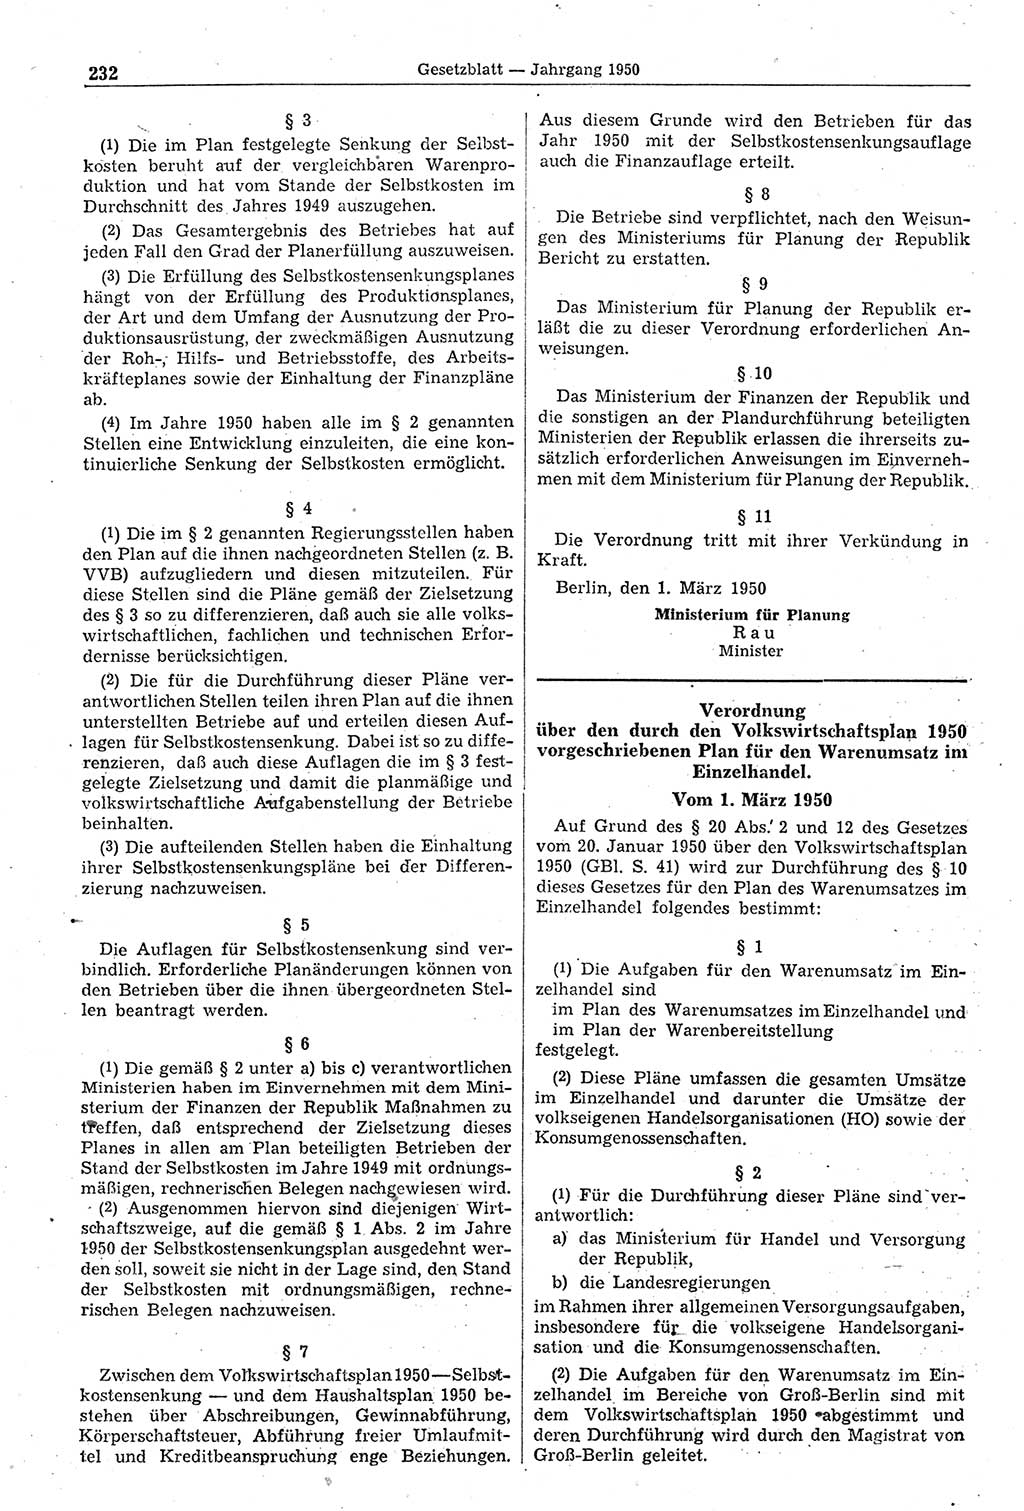 Gesetzblatt (GBl.) der Deutschen Demokratischen Republik (DDR) 1950, Seite 232 (GBl. DDR 1950, S. 232)